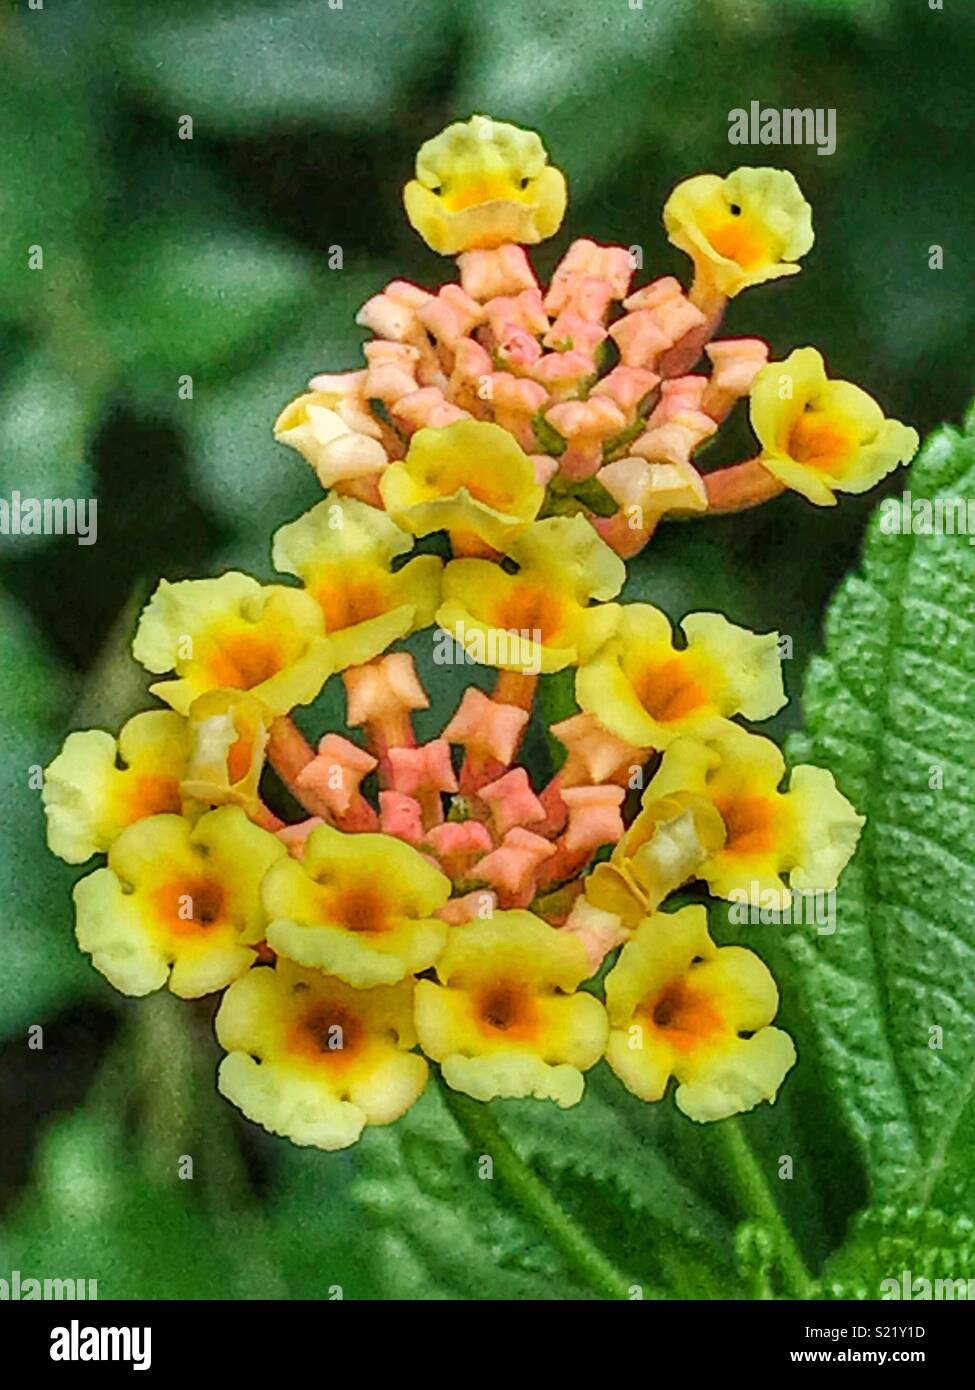 Yellow flowers blooming, Lantana camara Stock Photo